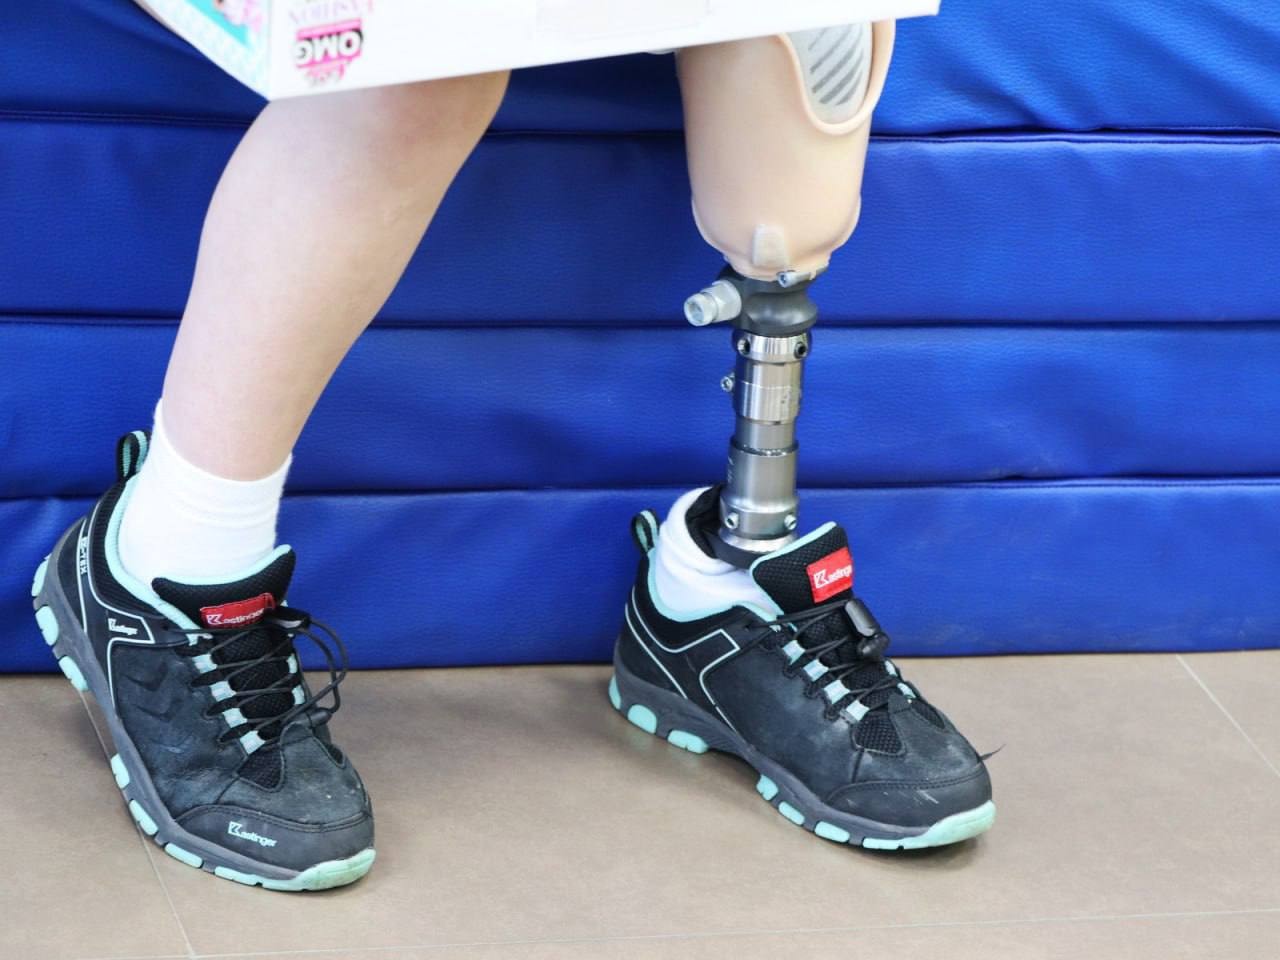 Шестирічна гімнастка, яка втратила ногу внаслідок російських обстрілів, повертається до тренувань (відео)